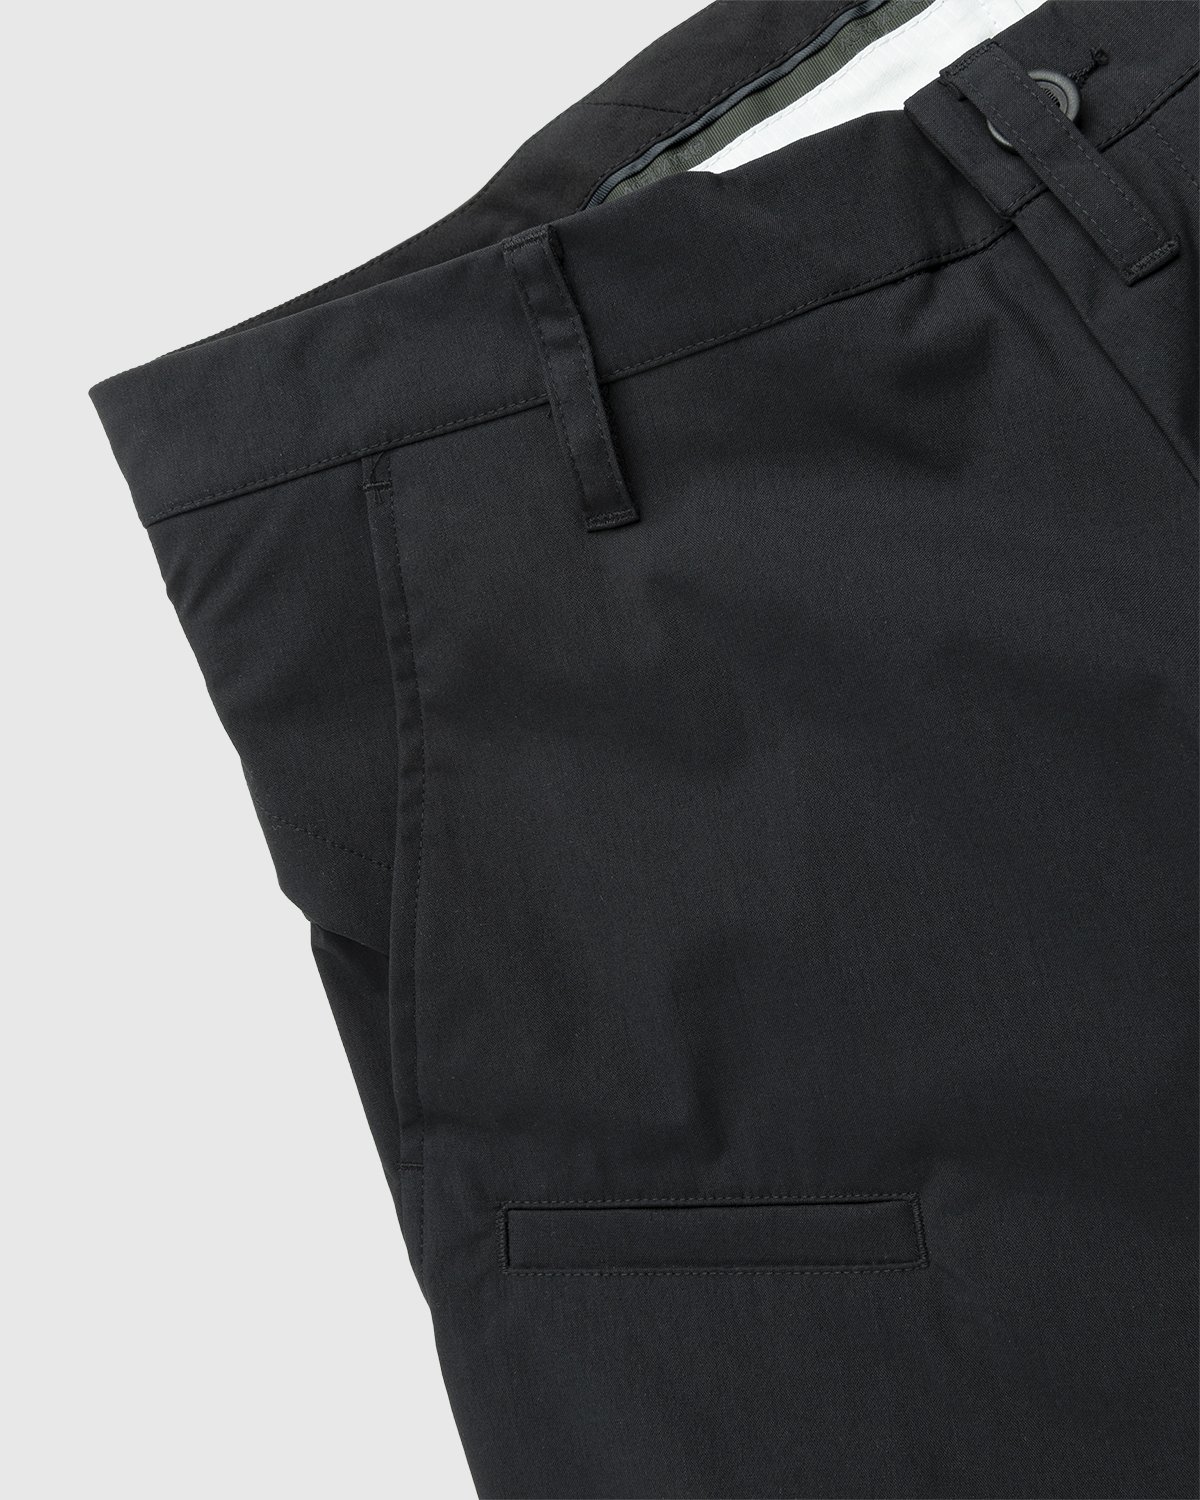 ACRONYM - P10-E Pant Black - Clothing - Black - Image 7